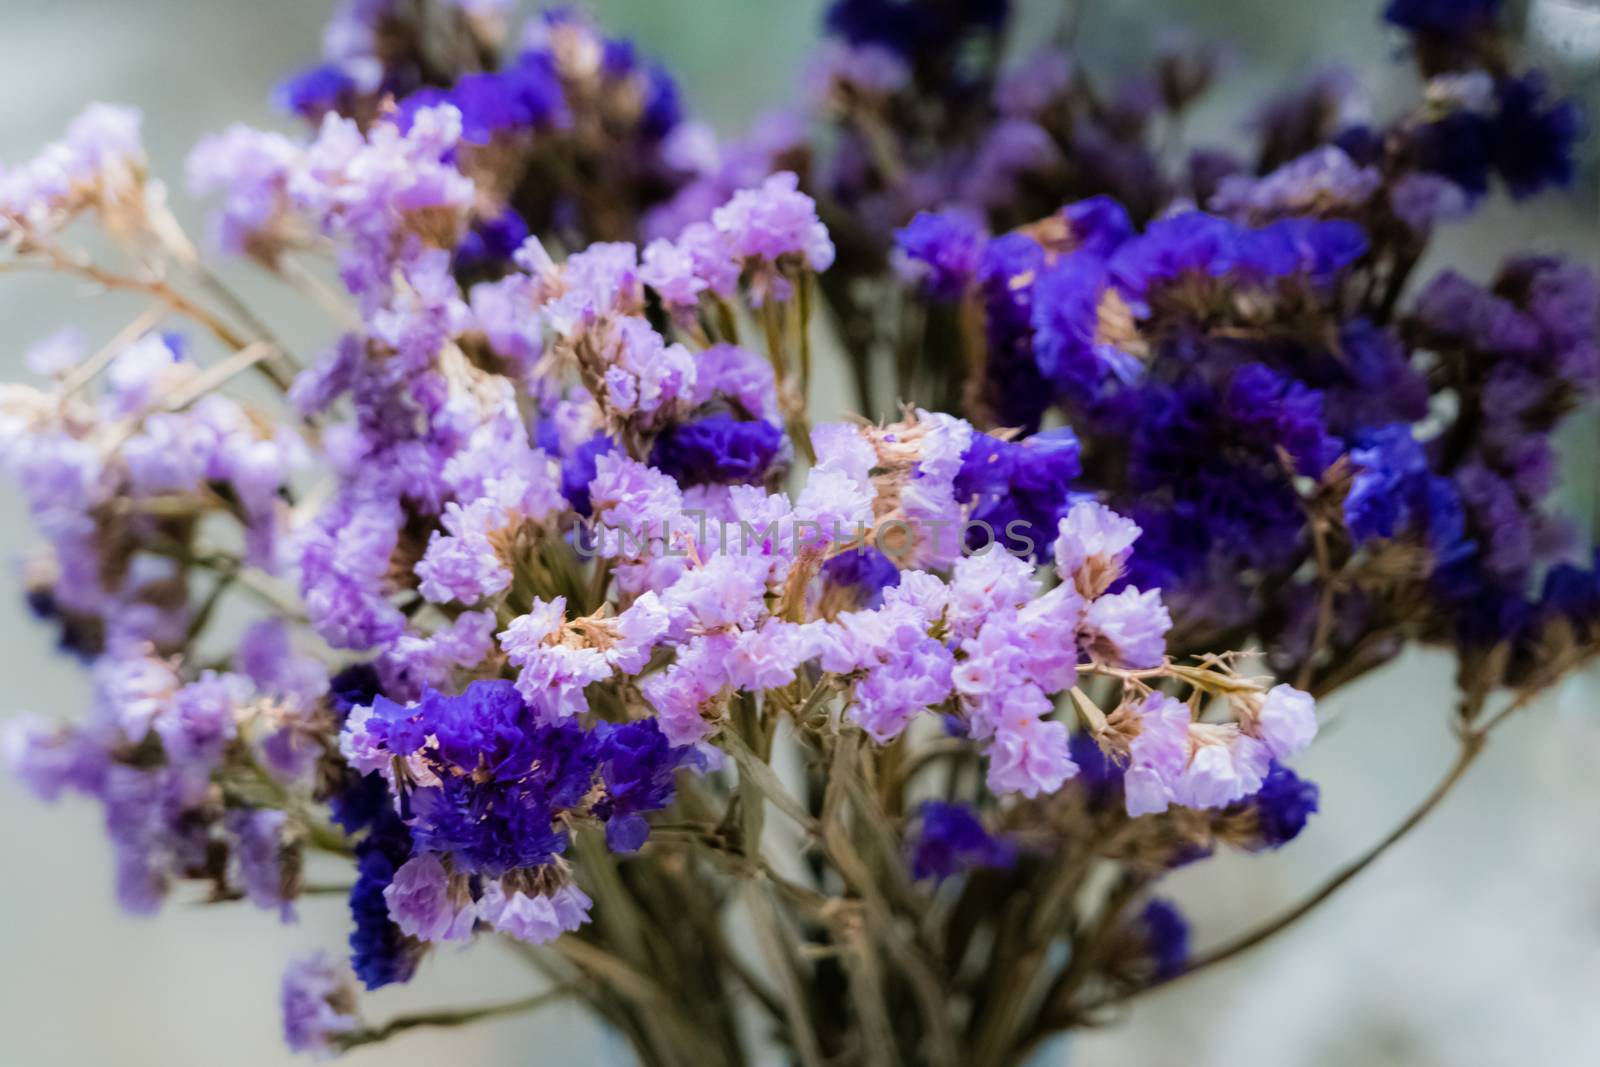 Purple statice flowers by psodaz